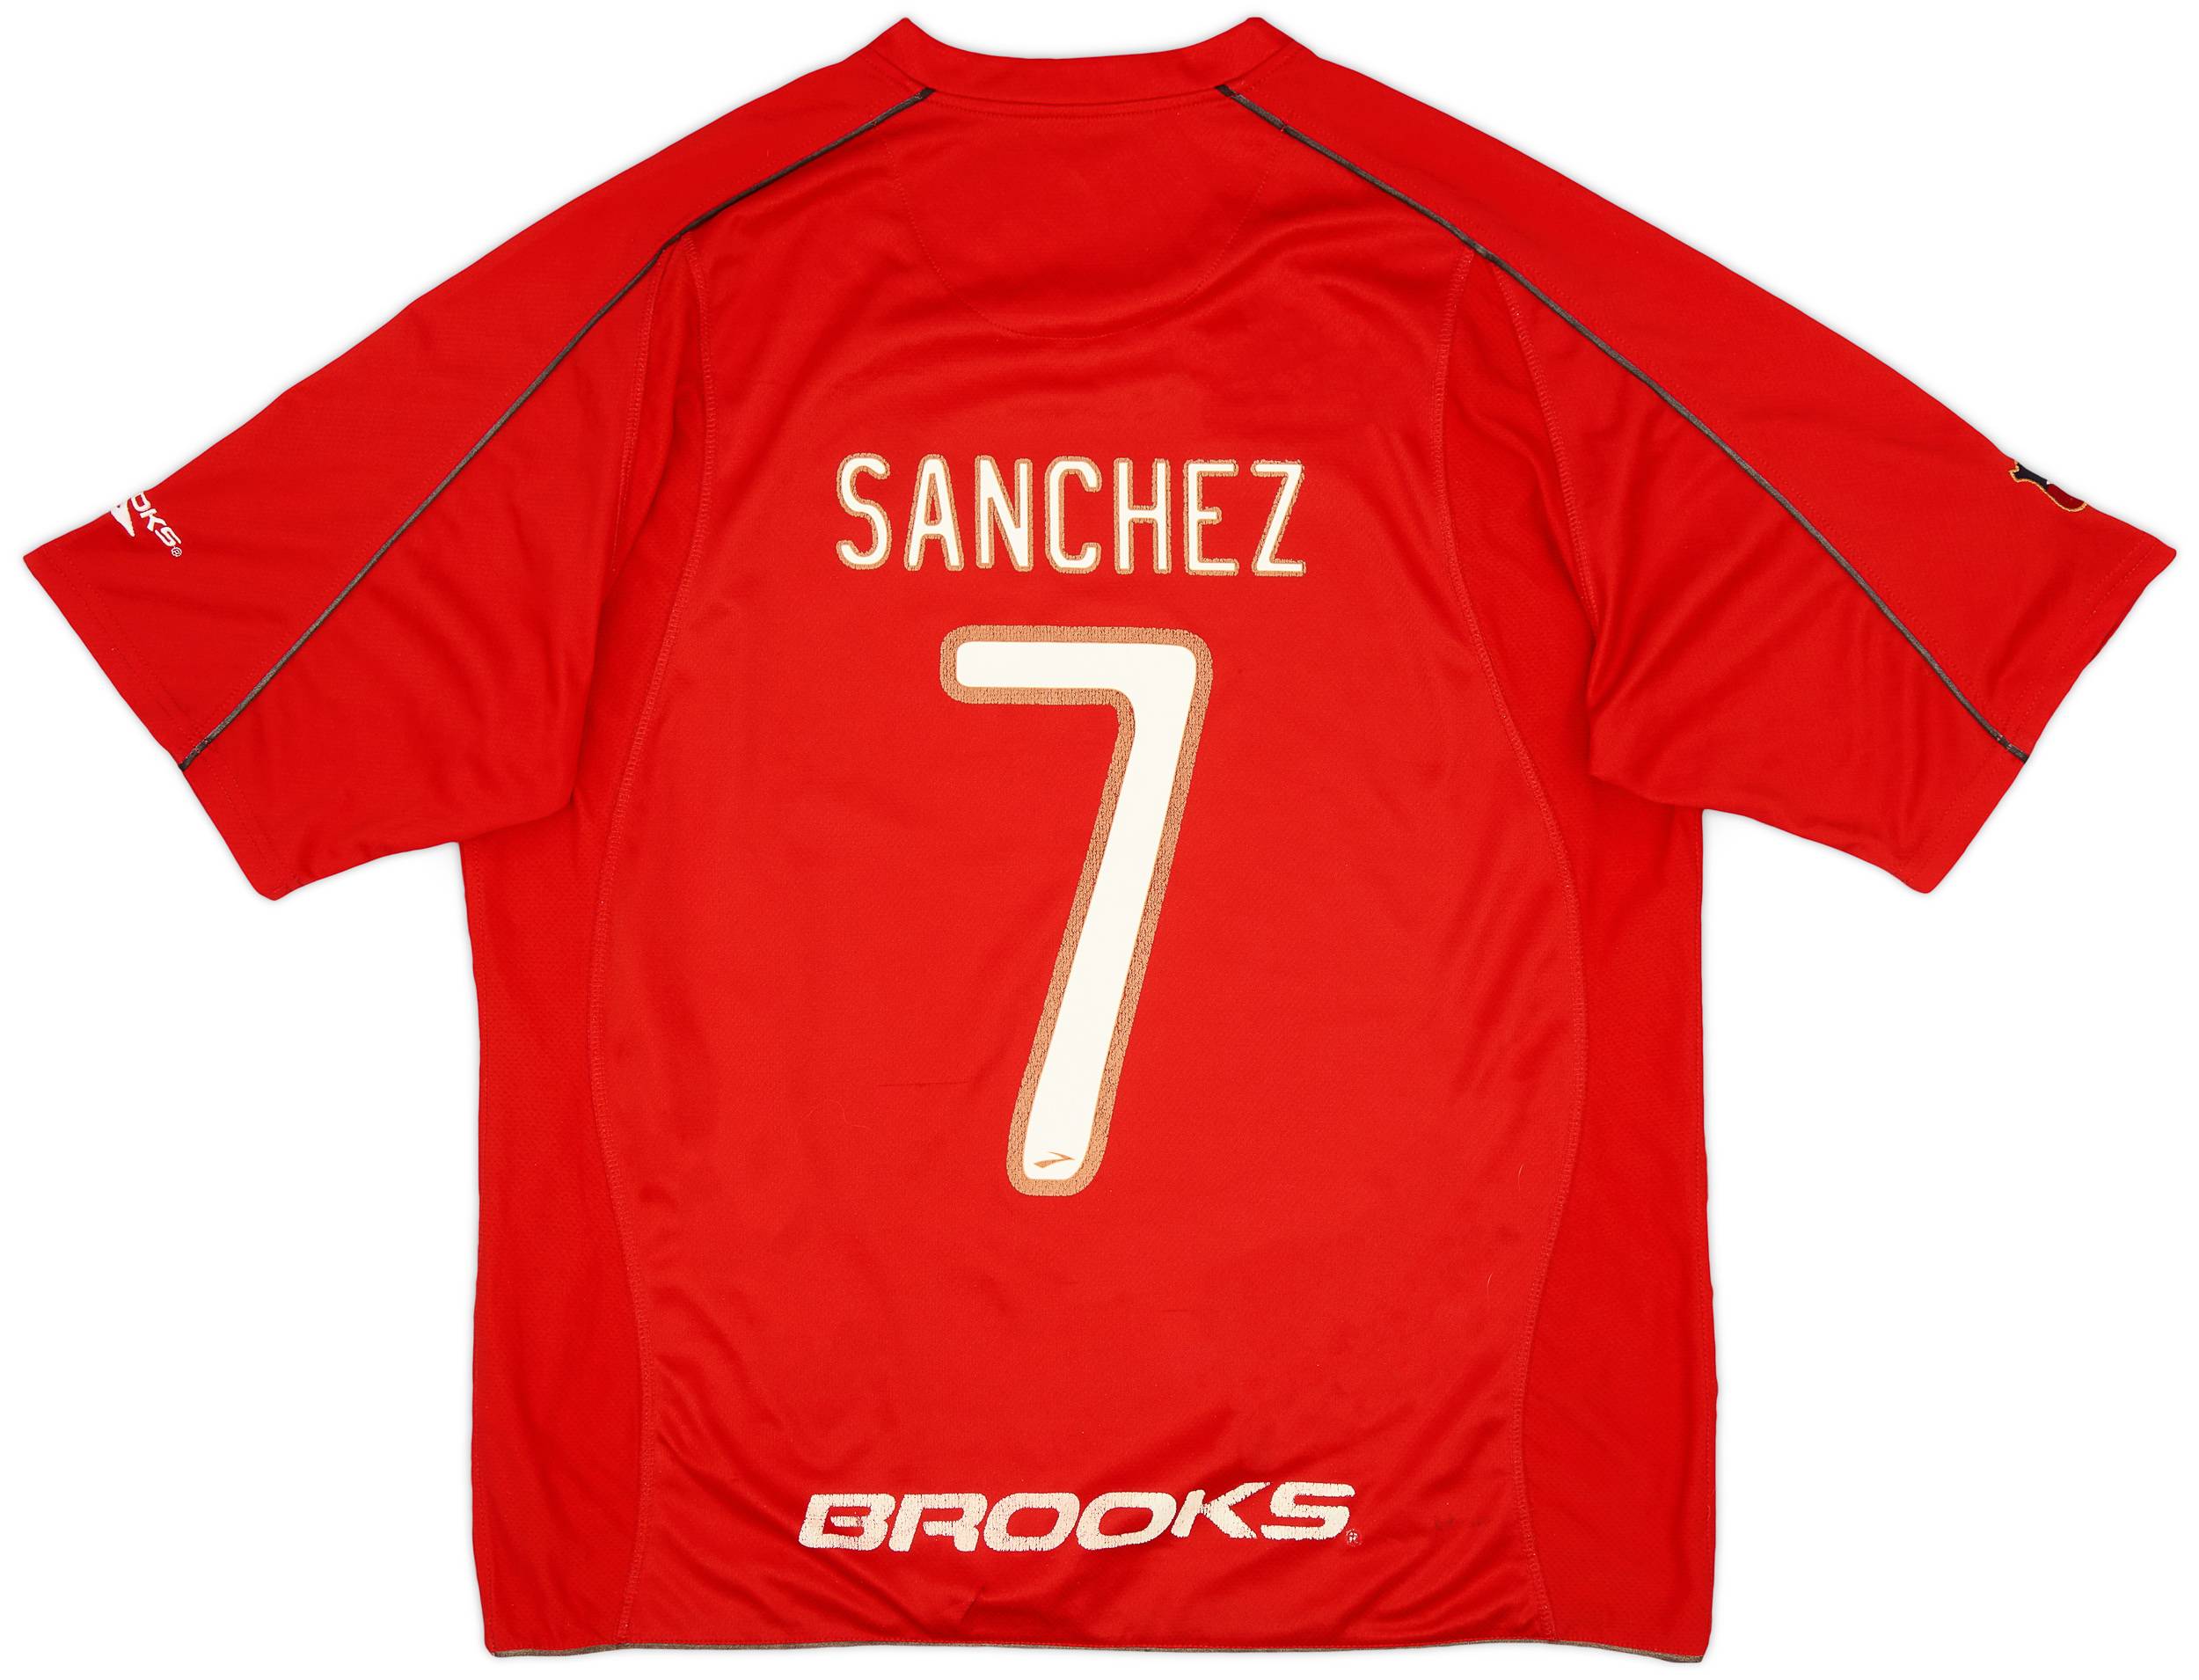 2010-11 Chile Home Shirt Sanchez #7 - 6/10 - (XL)